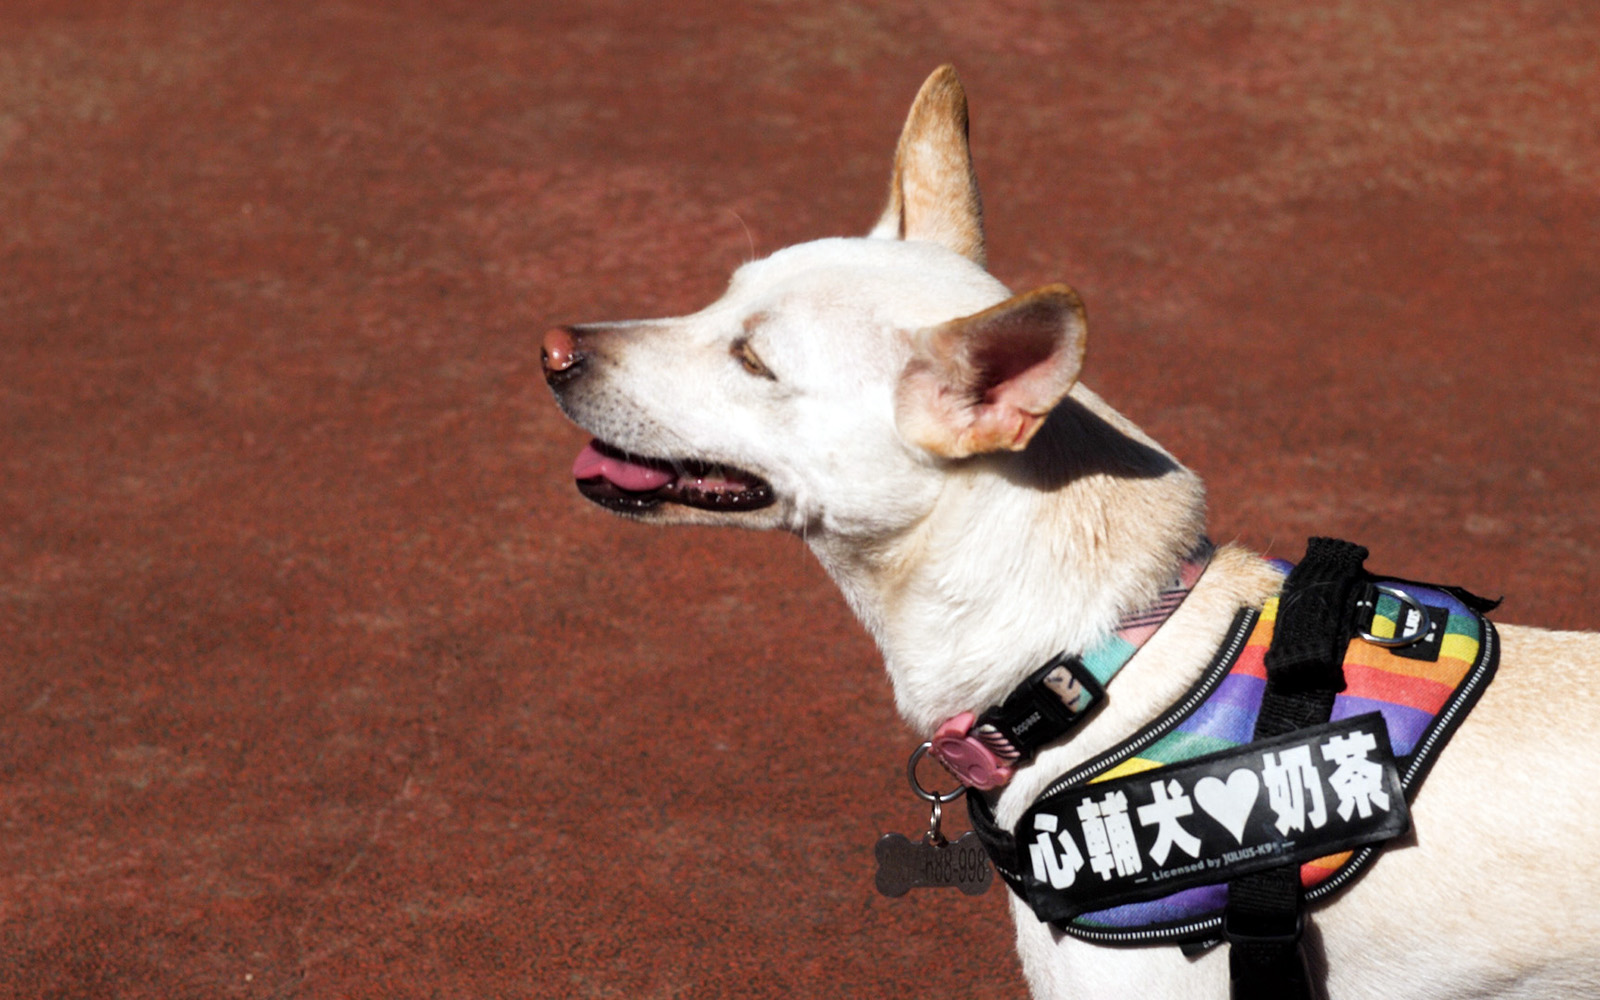 心輔犬心流幸福研究室的創辦人陳奕君，過去曾在美國生活，愛上了紐約中央公園中人犬間互動的活力與美好，為了追求這富含溫度與靠近人心的工作，她辭去了使用者體驗工程師的工作，投入導盲犬培訓的行業，也因此結識了投身導盲犬工作十二年、具備國際訓練師資格的鍾皓羽，兩人一見如故，決心要一起貢獻微薄的力量 | 甘樂小村長 | 忠實紀錄台灣鄉鎮默默耕耘的地方故事